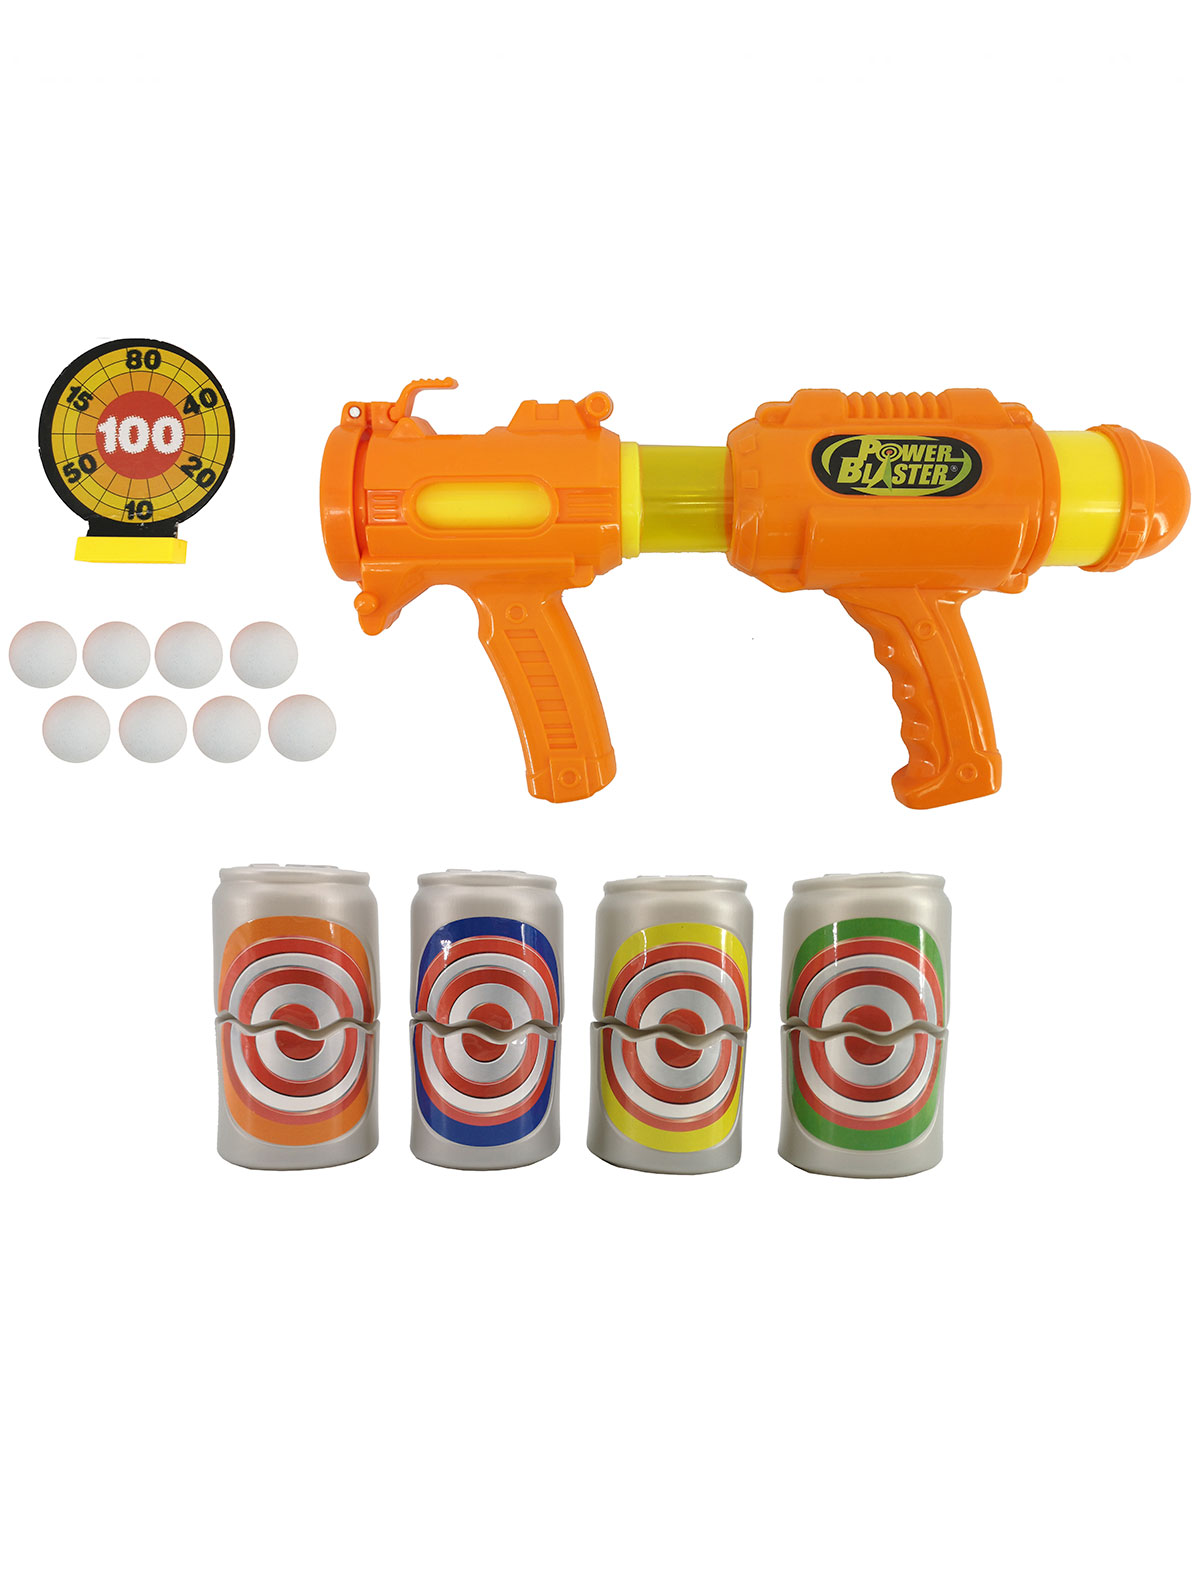 Купить 2213427, Игрушка Toy Target, оранжевый, 7134529071791